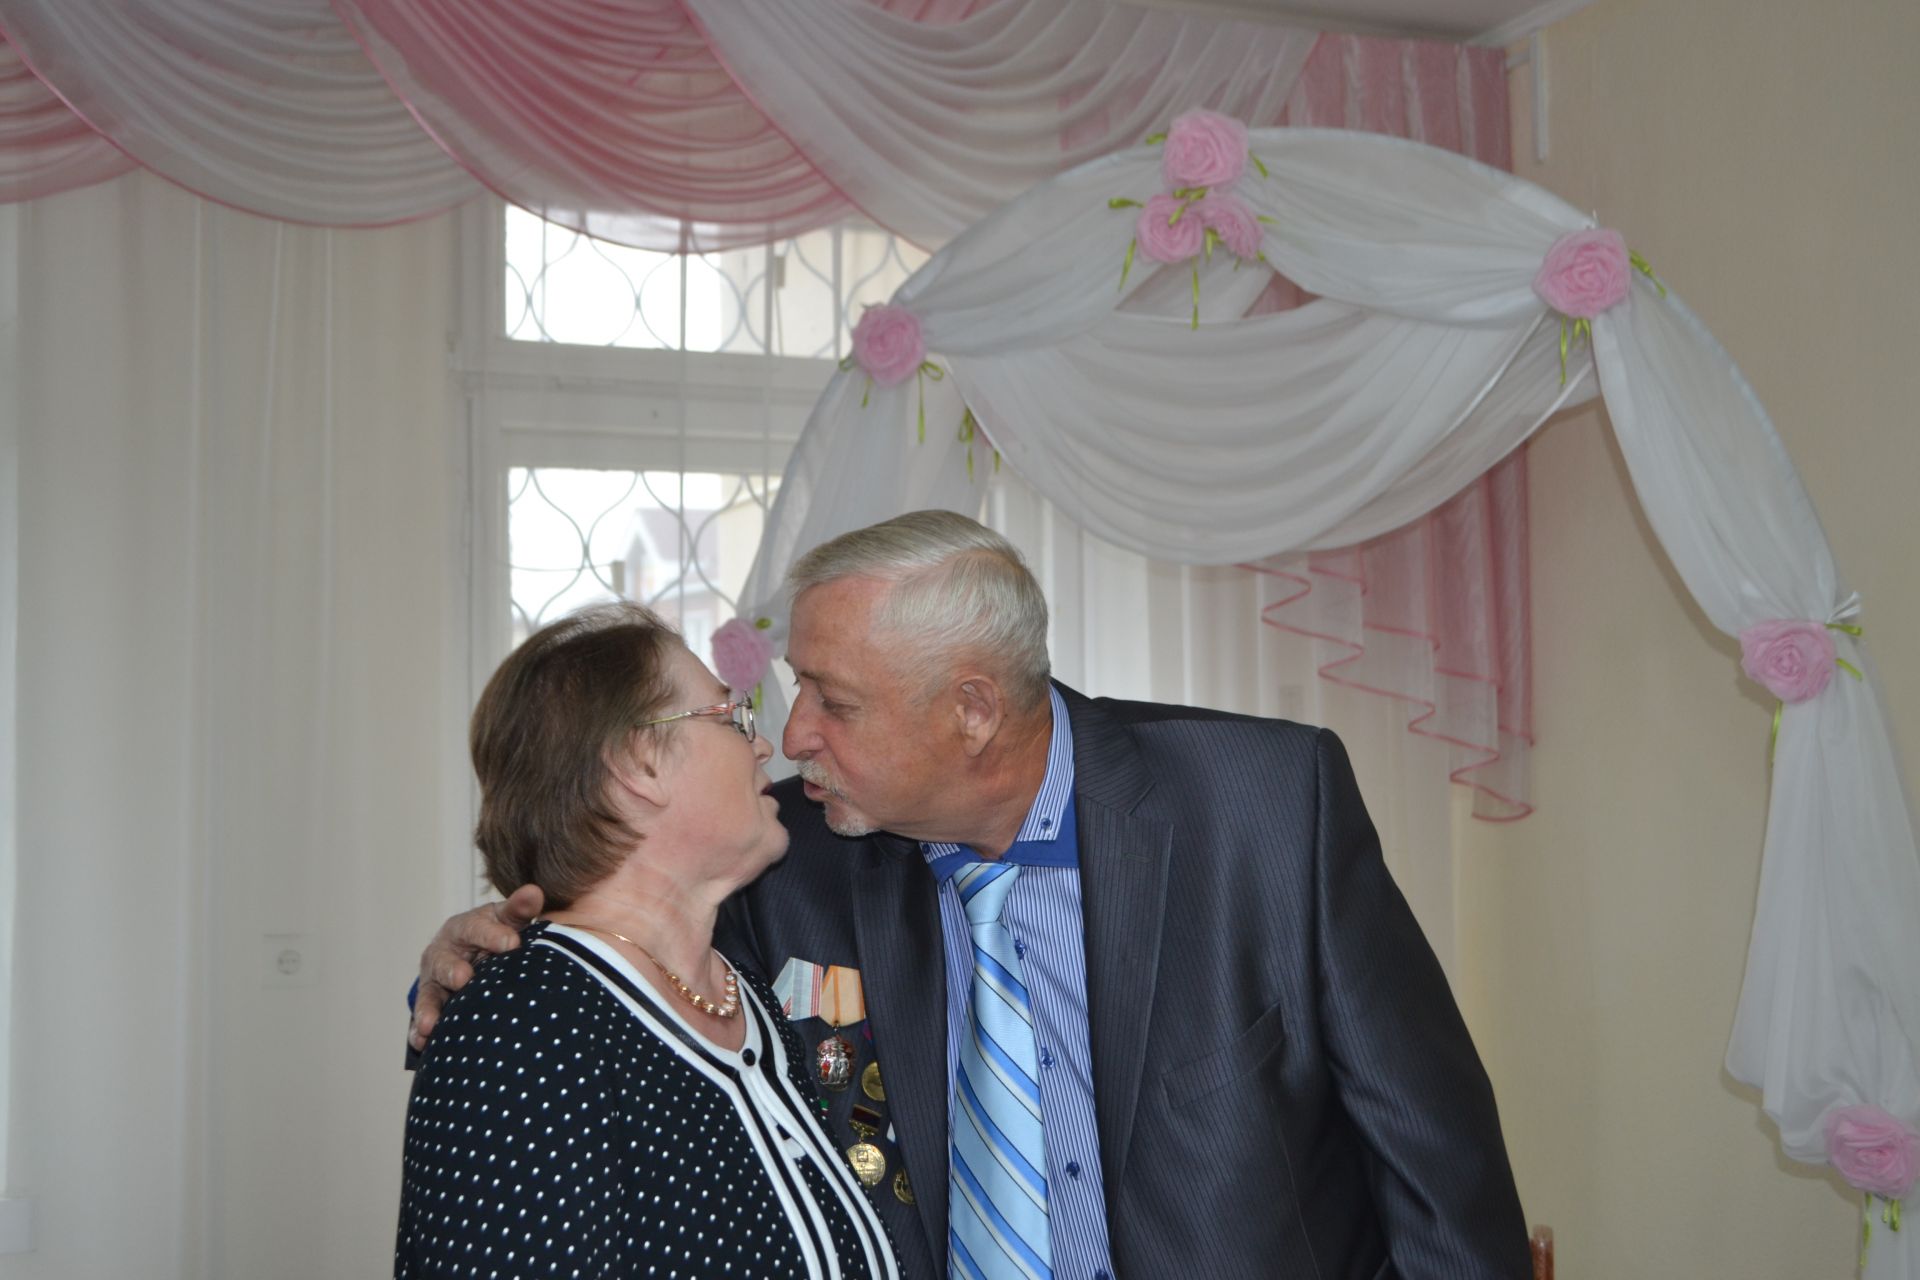 Высшей пробы юбилей: супруги Филеневы из Шеланги отметили 50-летие совместной жизни